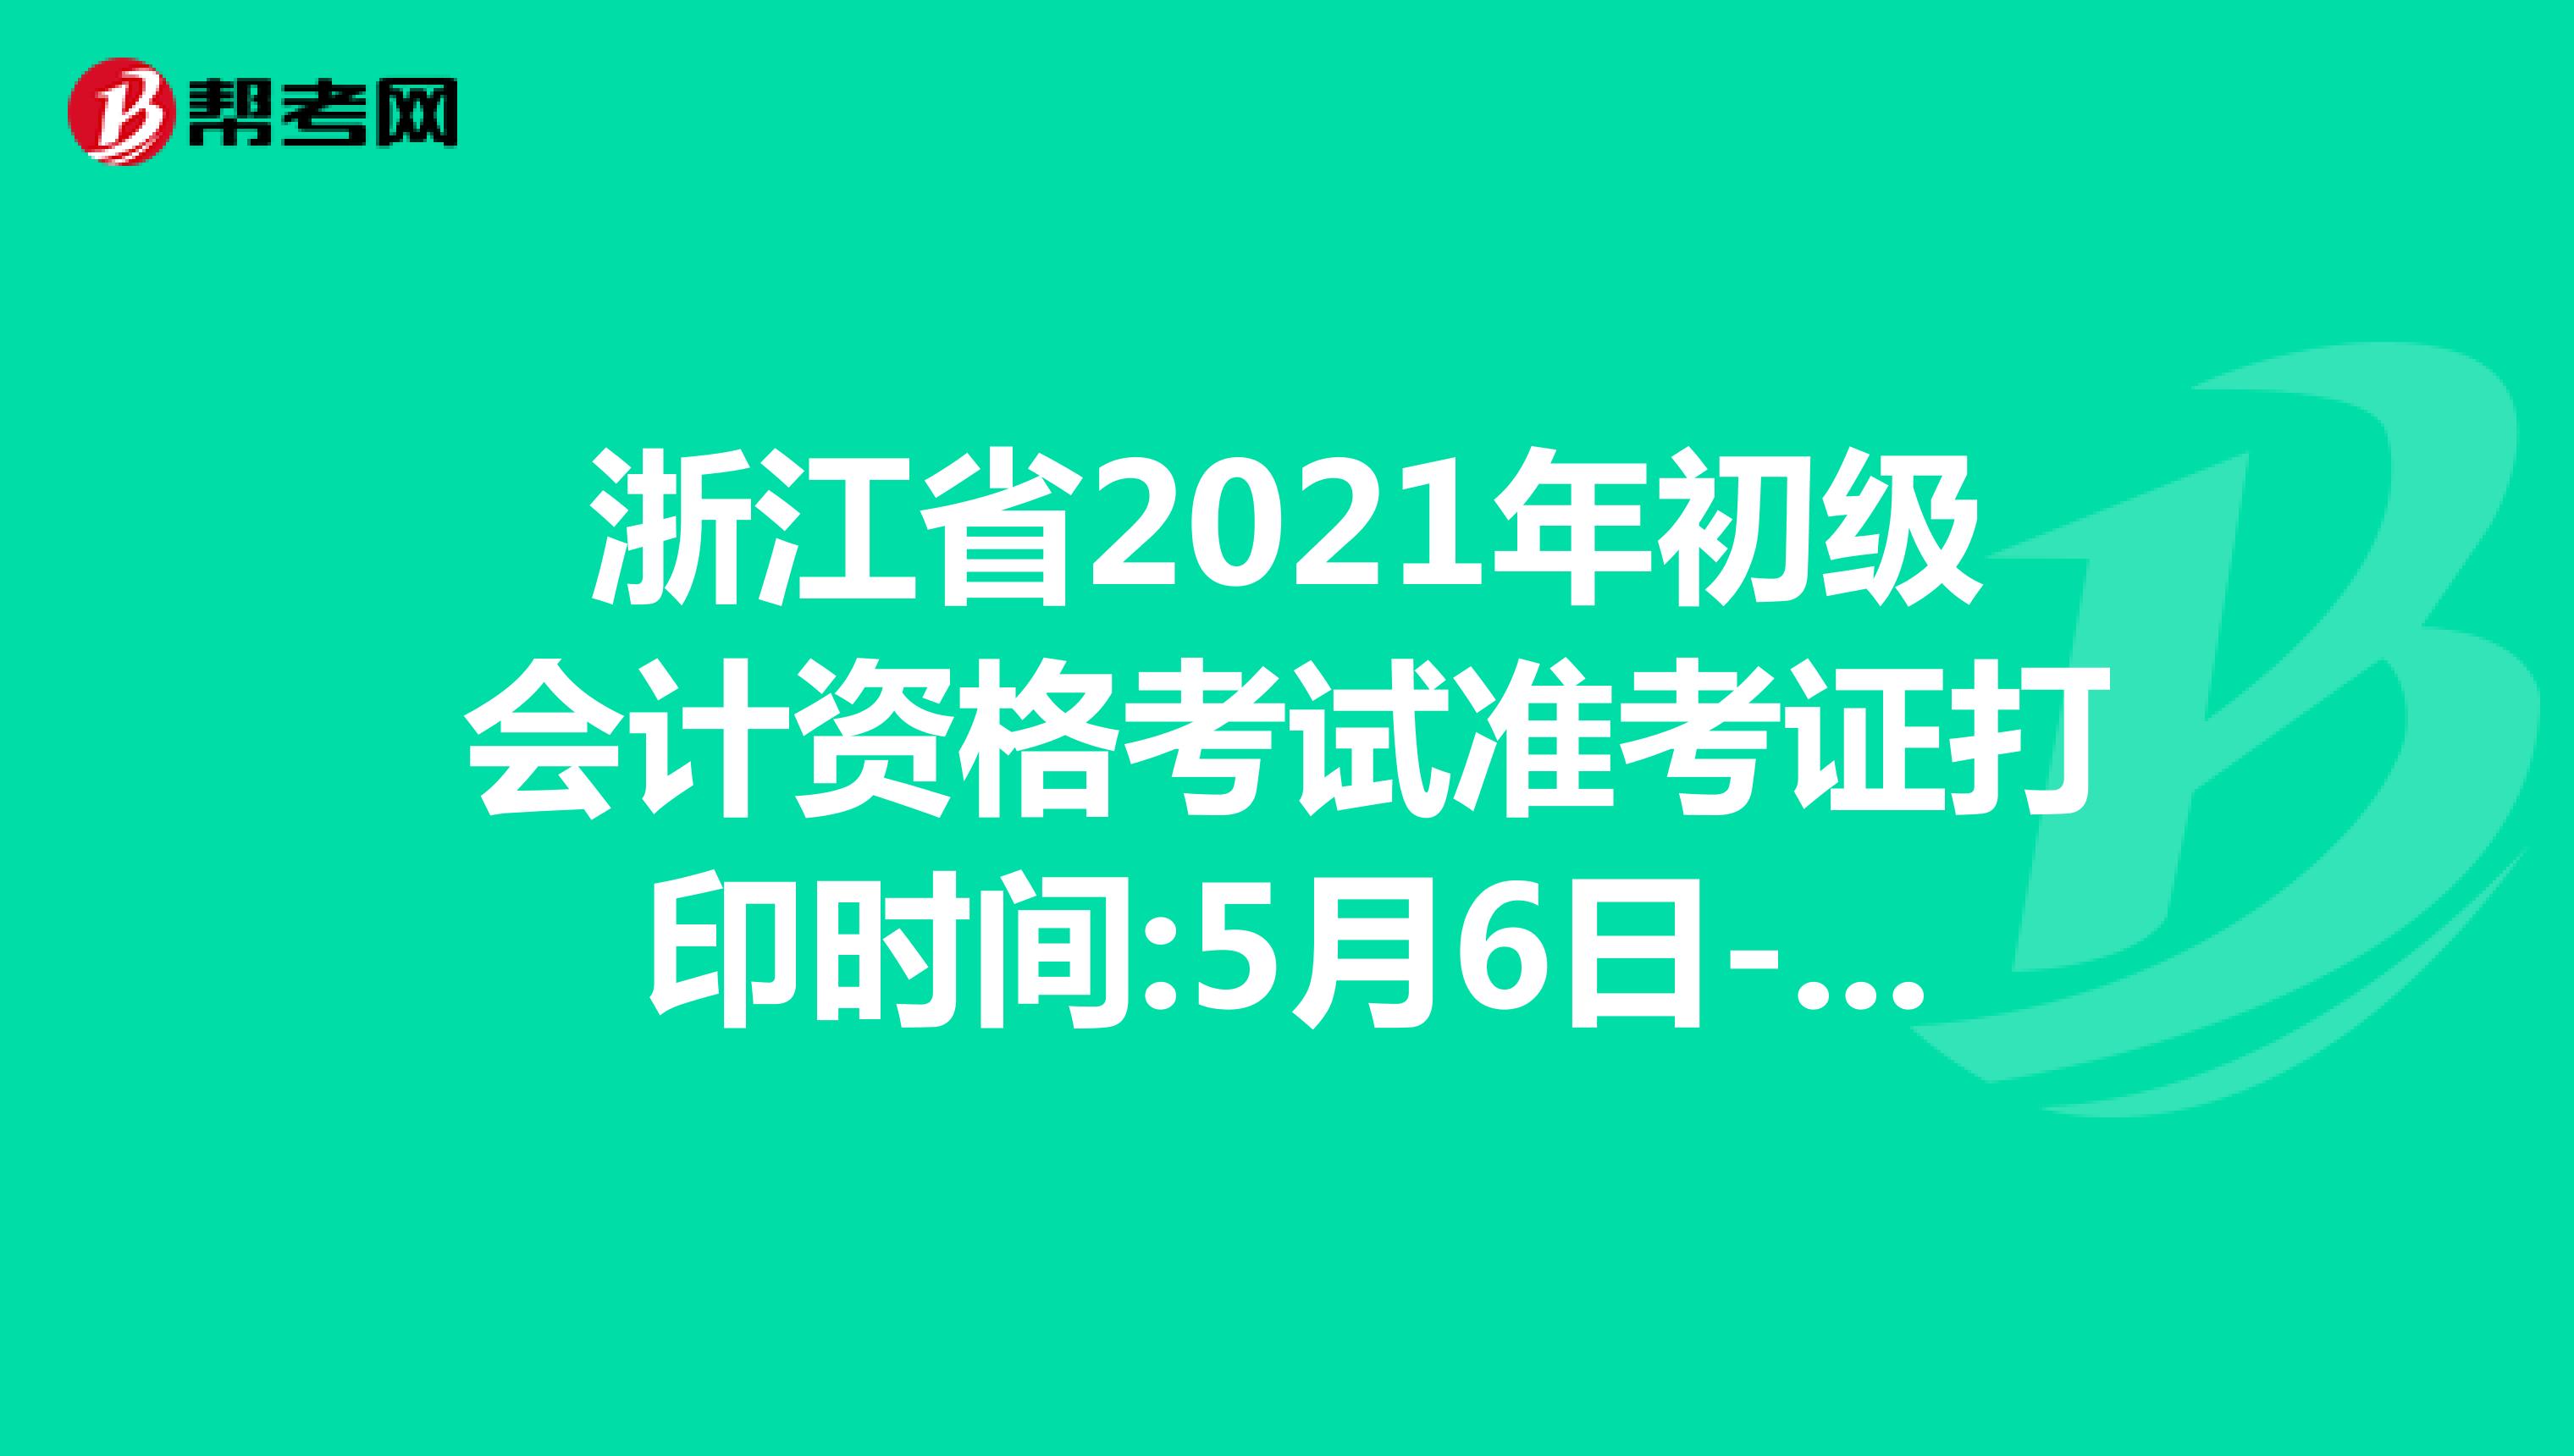 浙江省2021年初级会计资格考试准考证打印时间:5月6日-5月23日